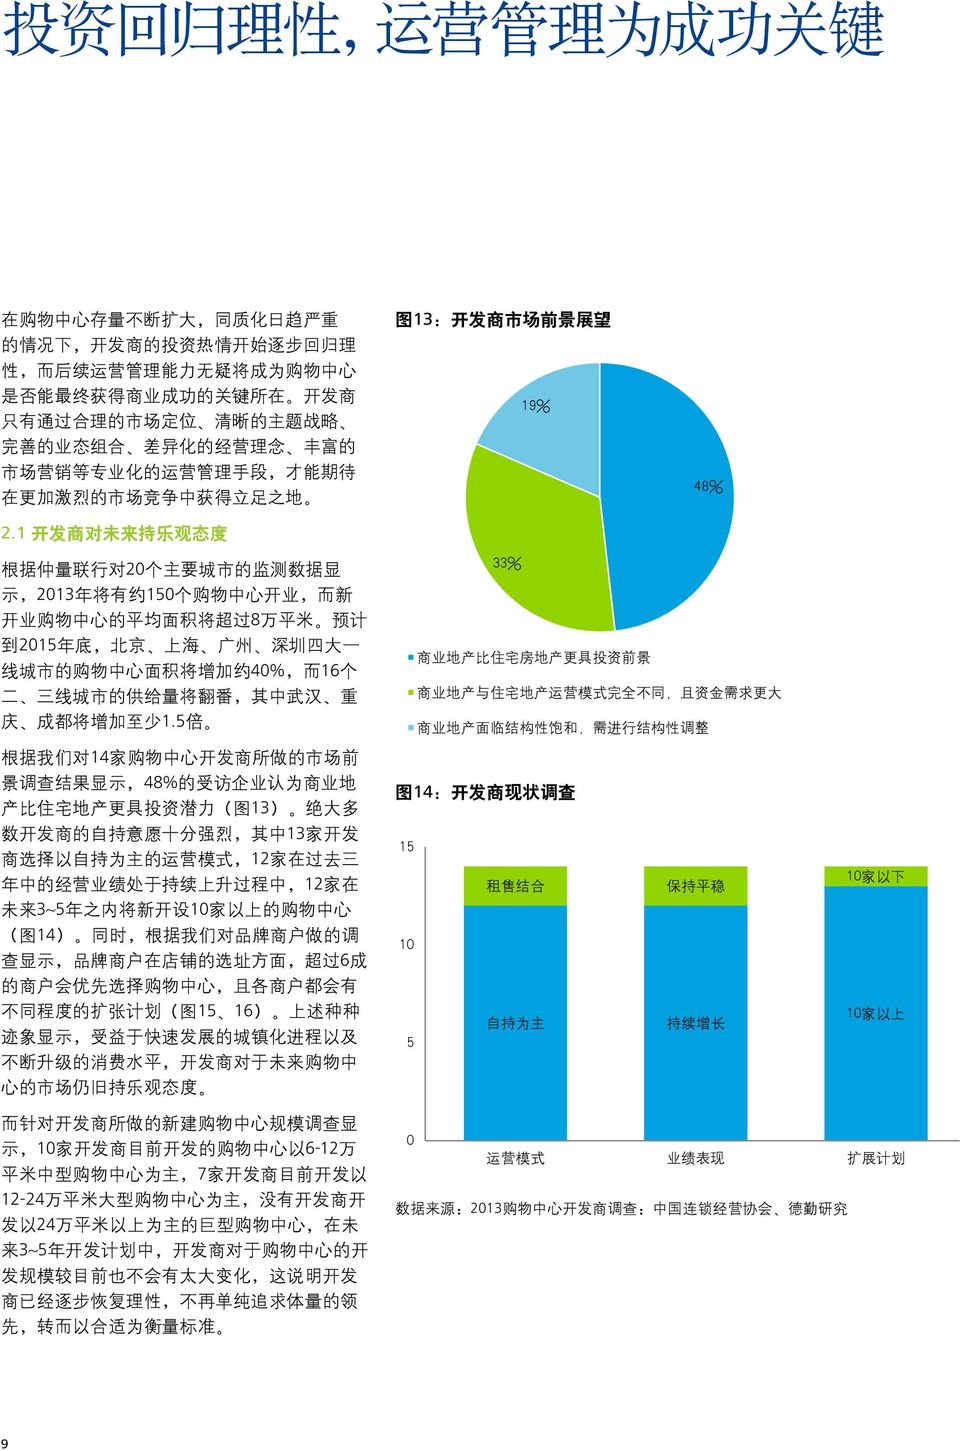 1 开 发 商 对 未 来 持 乐 观 态 度 图 13: 开 发 商 市 场 前 景 展 望 19% 48% 根 据 仲 量 联 行 对 2 个 主 要 城 市 的 监 测 数 据 显 示,213 年 将 有 约 15 个 购 物 中 心 开 业, 而 新 开 业 购 物 中 心 的 平 均 面 积 将 超 过 8 万 平 米 预 计 到 215 年 底, 北 京 上 海 广 州 深 圳 四